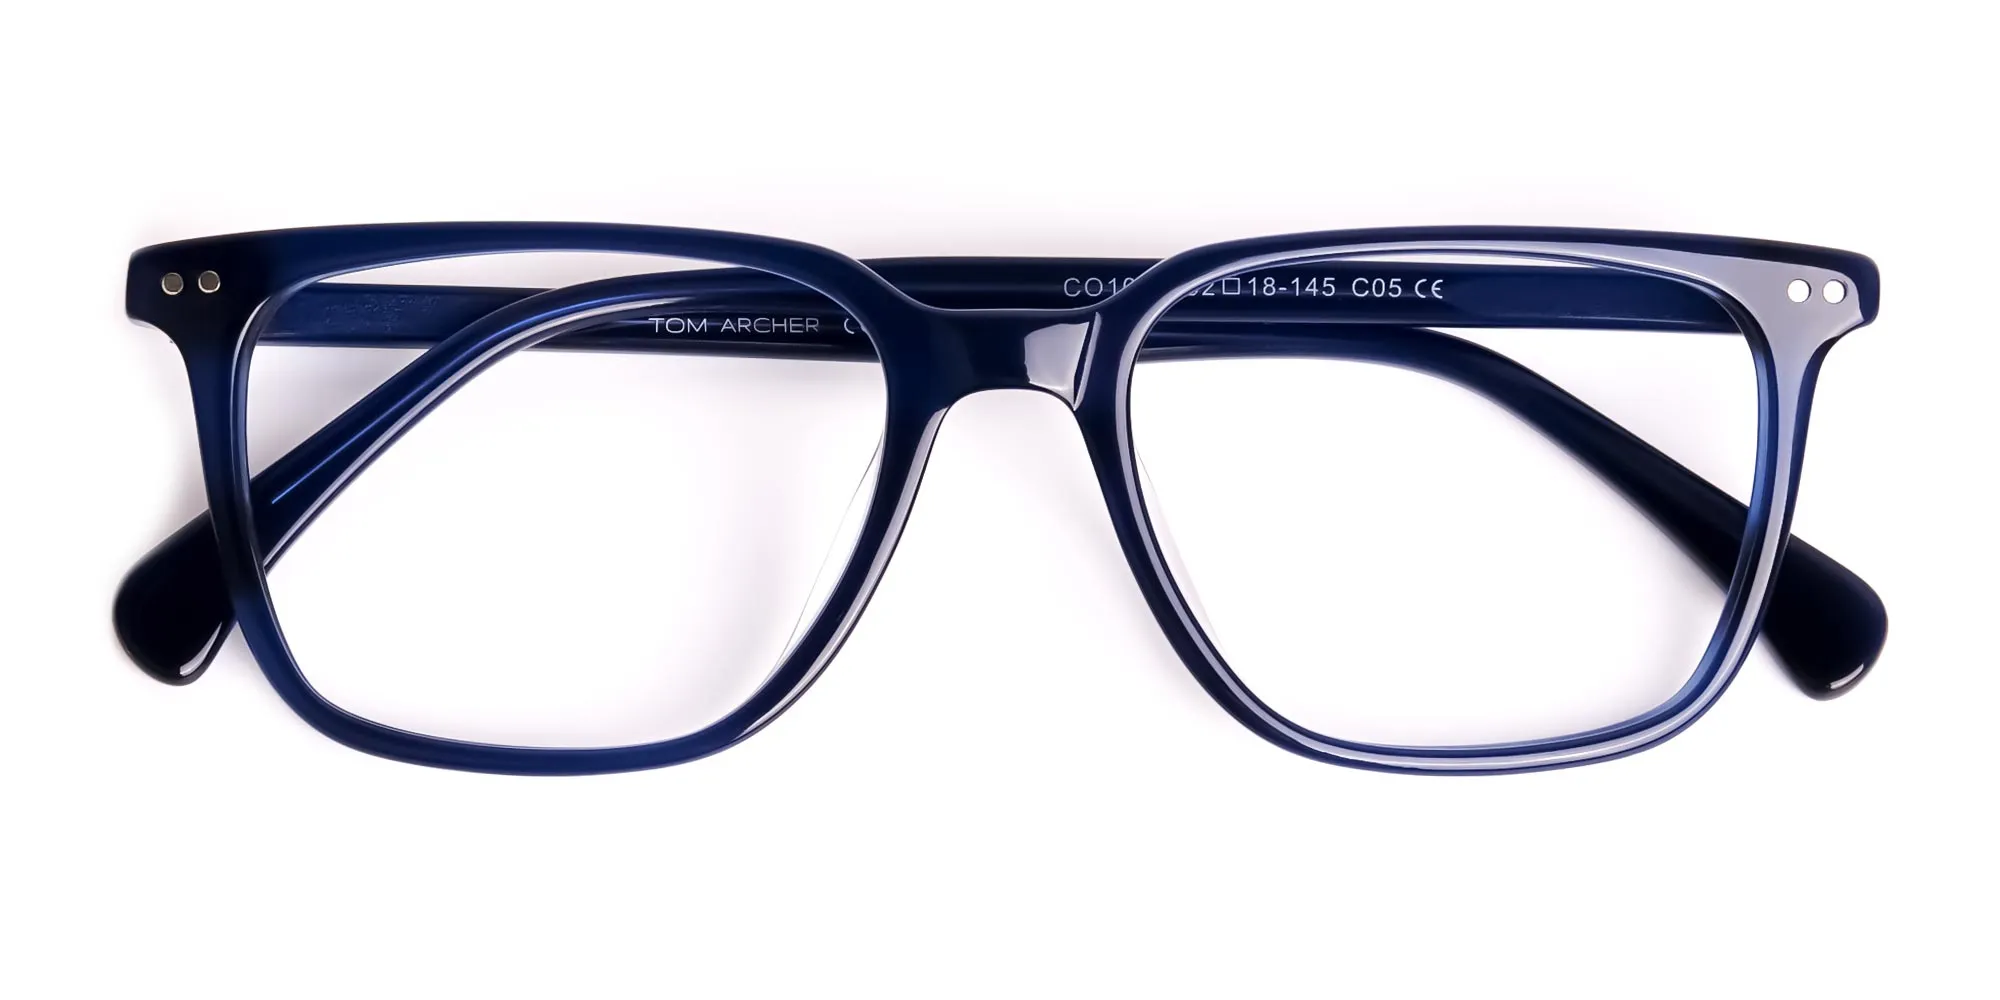 navy-blue-rectangular-wayfarer-full-rim-glasses-frames-2